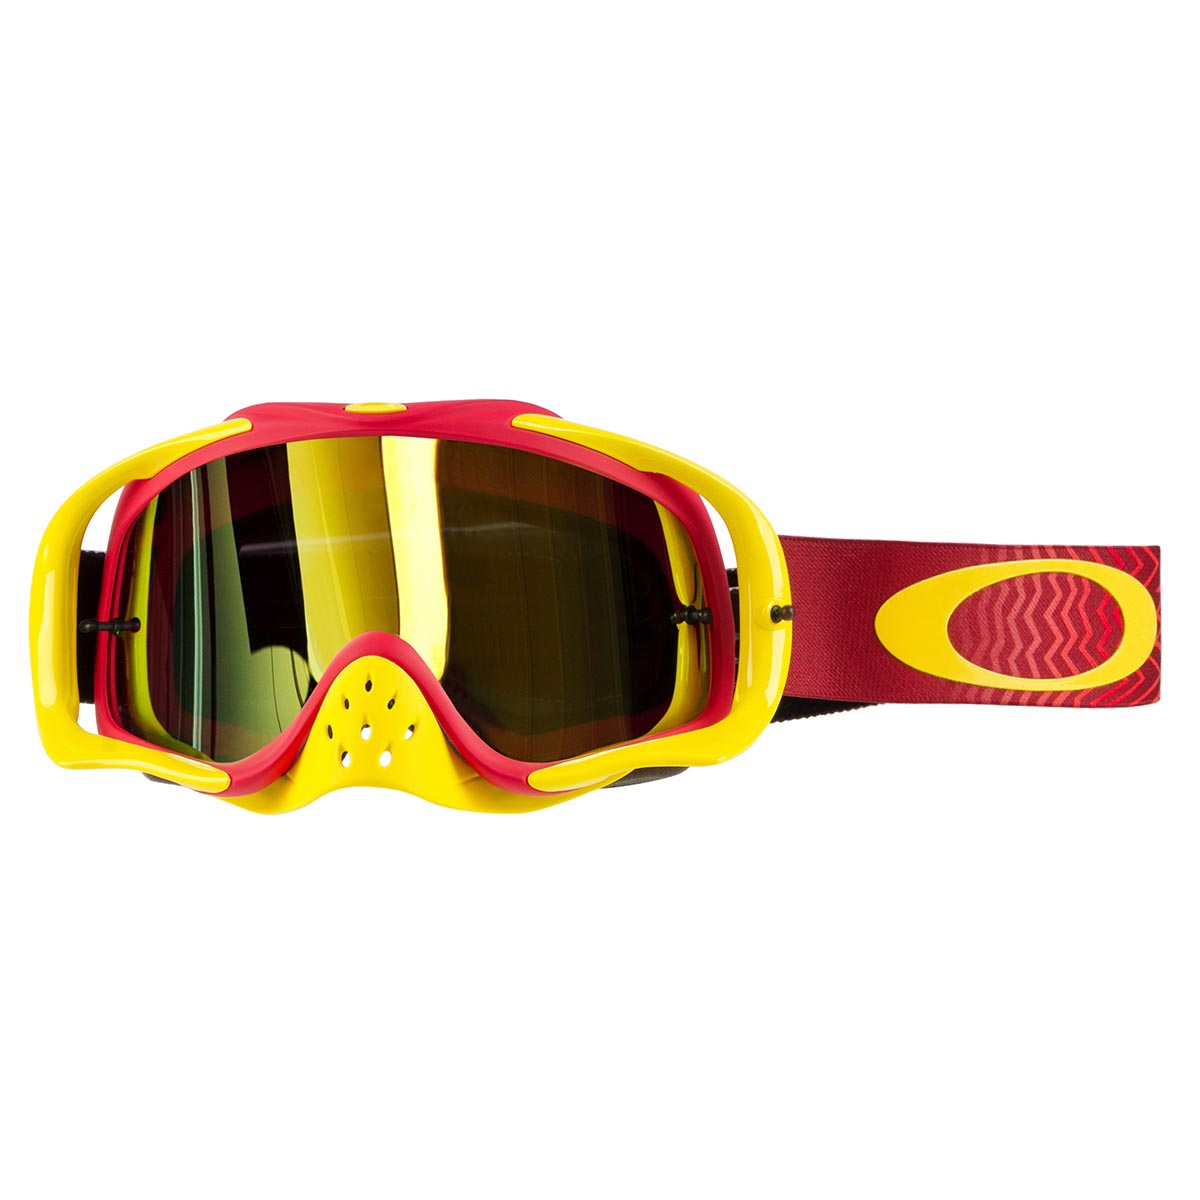 Oakley Masque Crowbar MX Shockwave Red/Yellow - 24K Iridium/Clear Anti-Fog